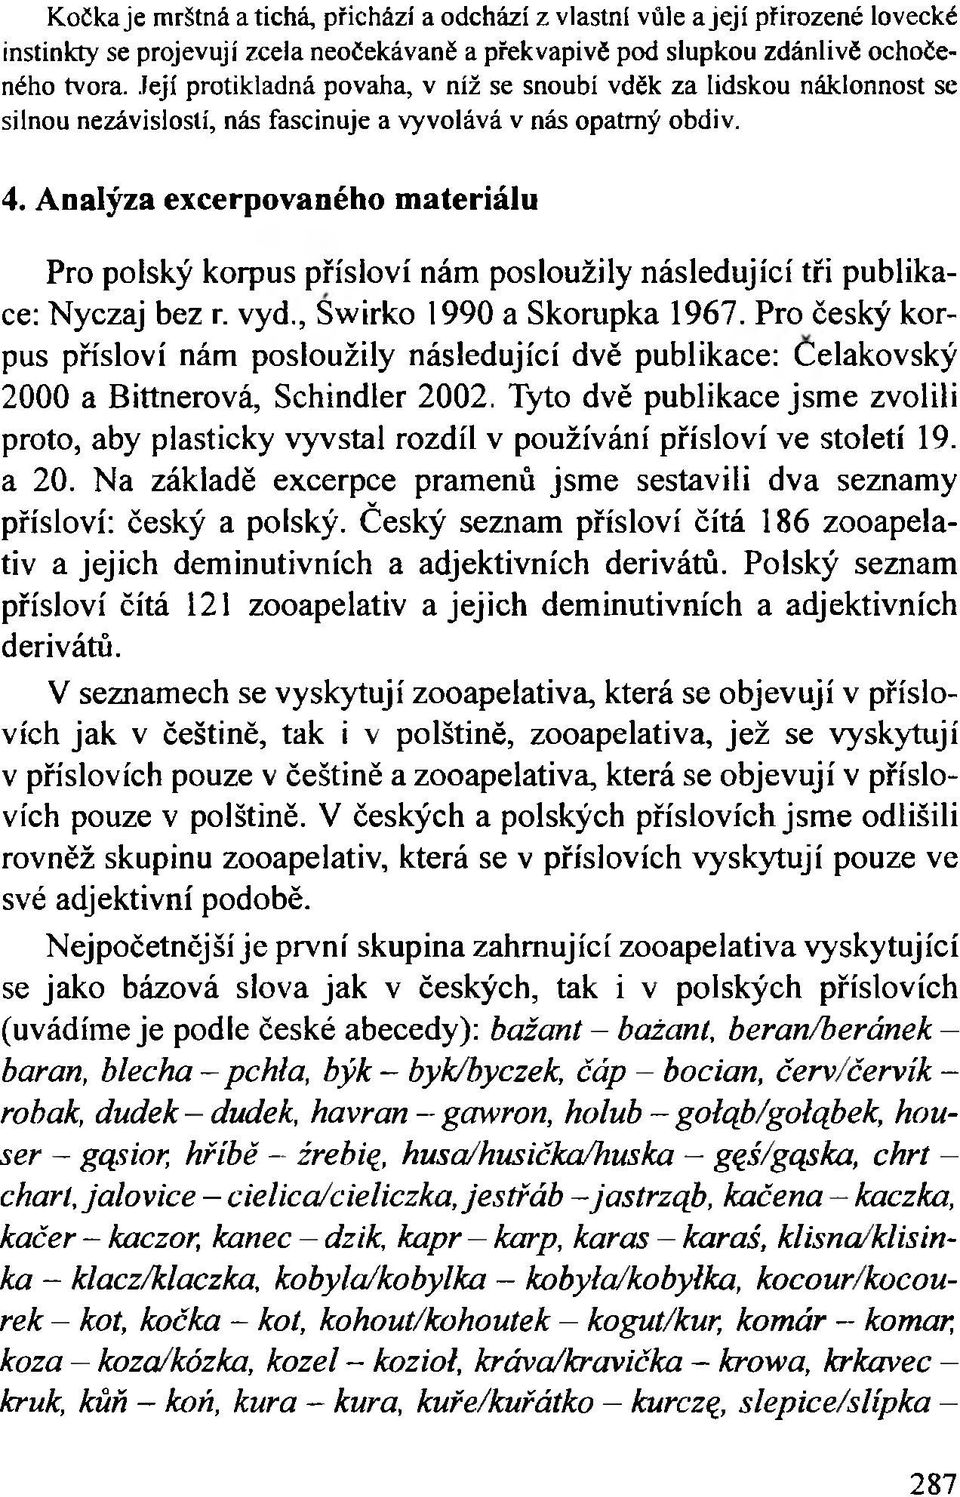 Analýza excerpovaného materiálu Pro polský korpus přísloví nám posloužily následující tři publikace: Nyczaj bez r. vyd., Swirko 1990 a Skorupka 1967.